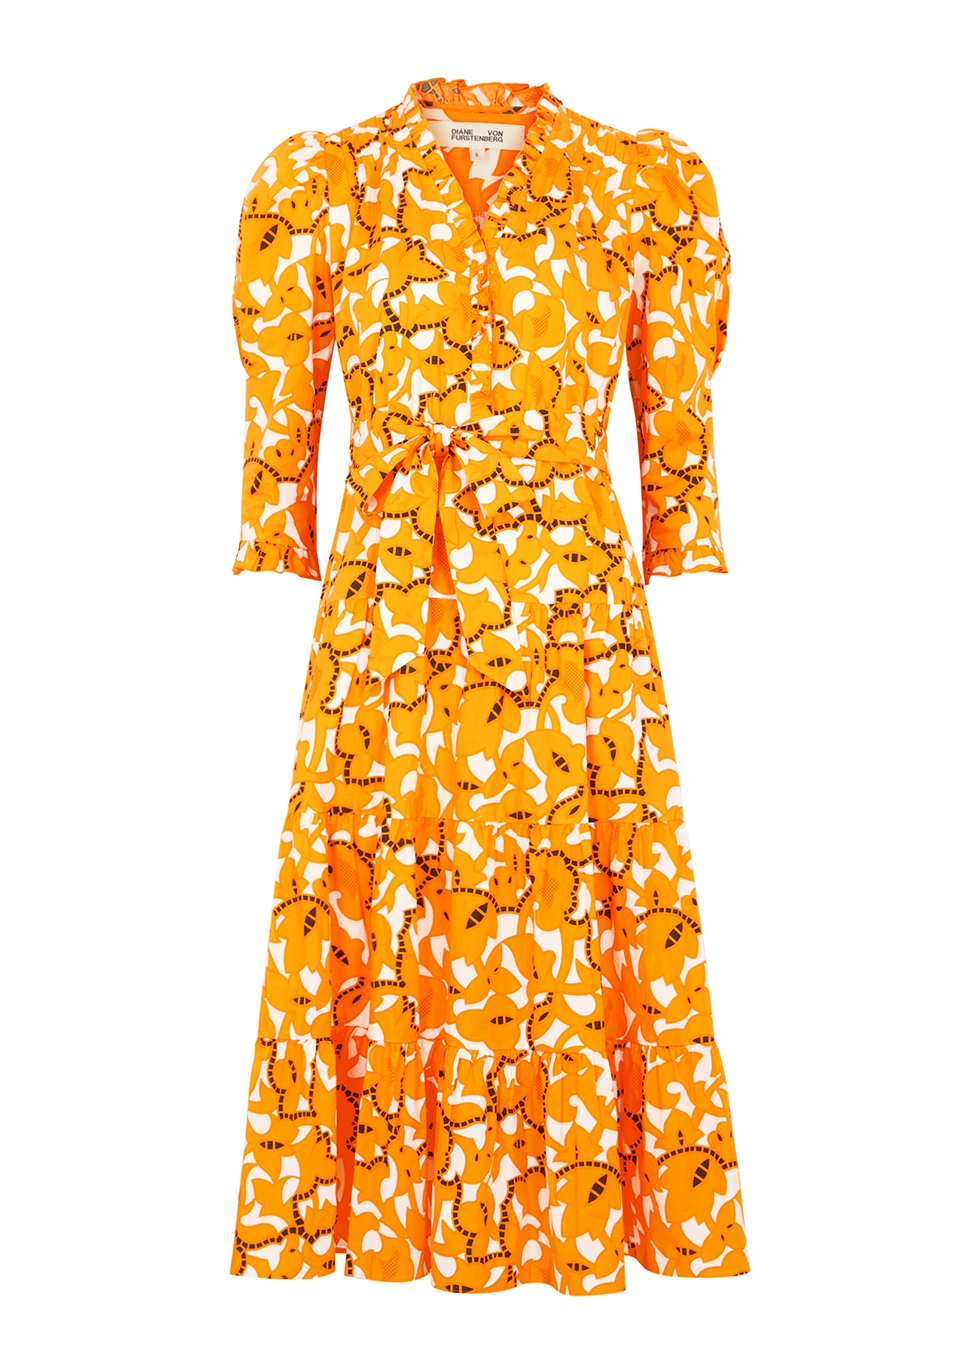 Diane von Furstenberg Dresses, Shirts, Tops, Jackets - Harvey Nichols